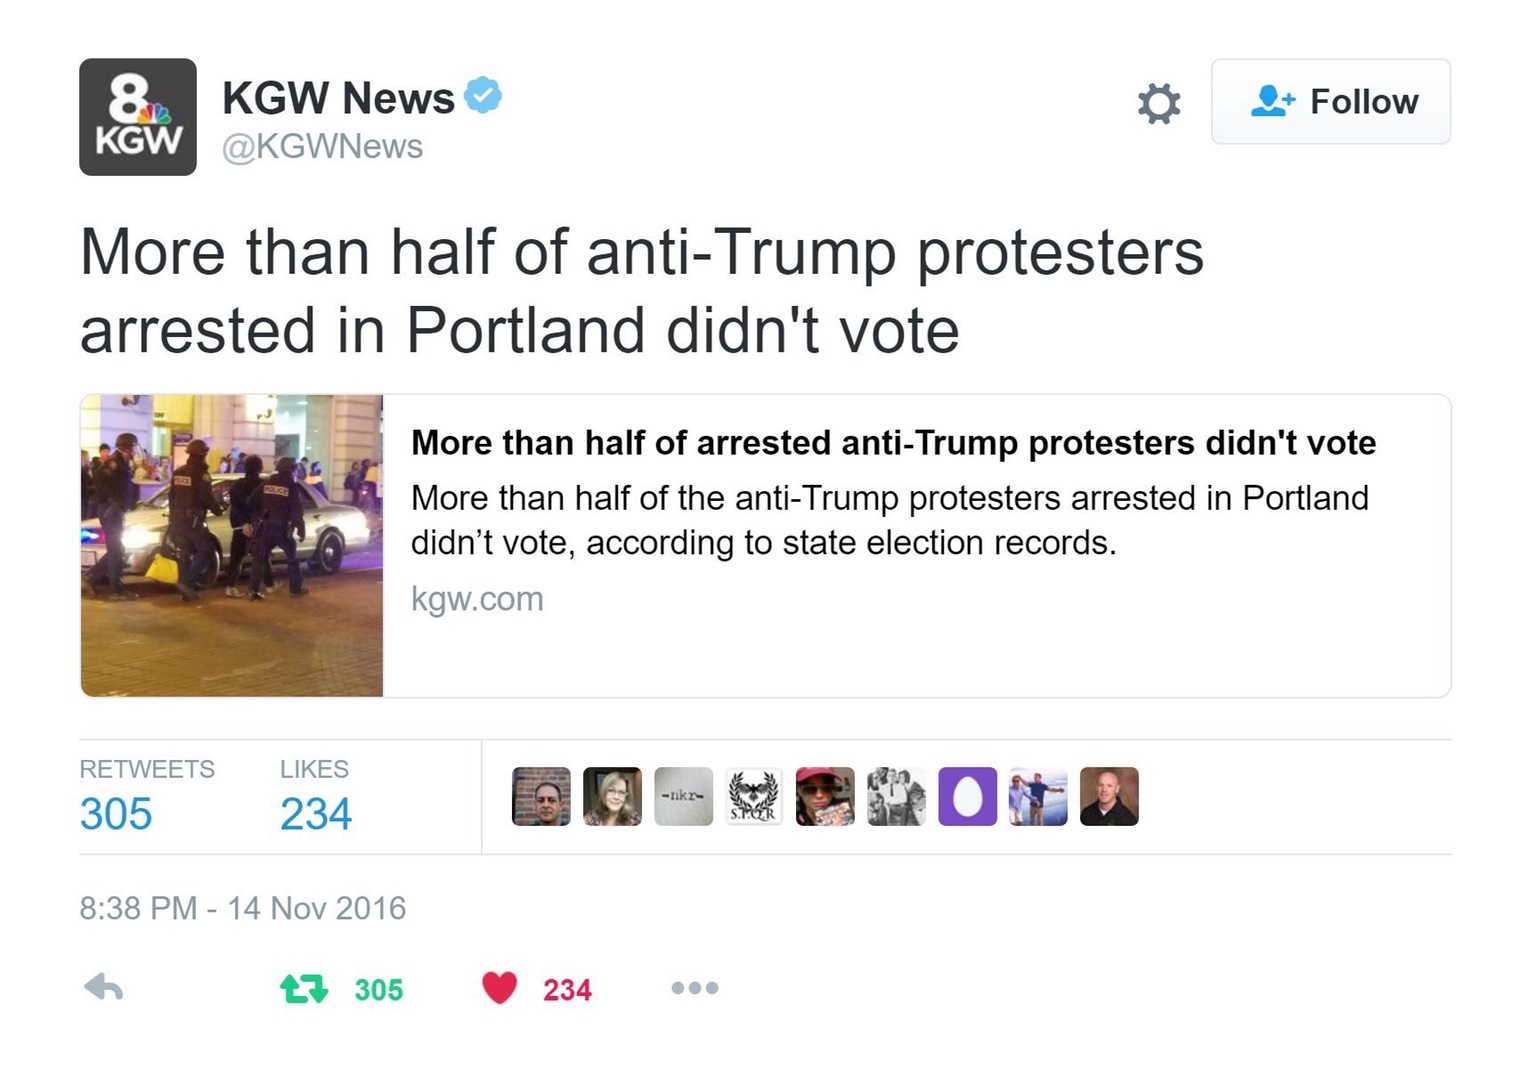 guillermo del toro fuck konami - Kgw News 3 Kgw More than half of antiTrump protesters arrested in Portland didn't vote More than half of arrested antiTrump protesters didn't vote More than half of the antiTrump protesters arrested in Portland didn't vote